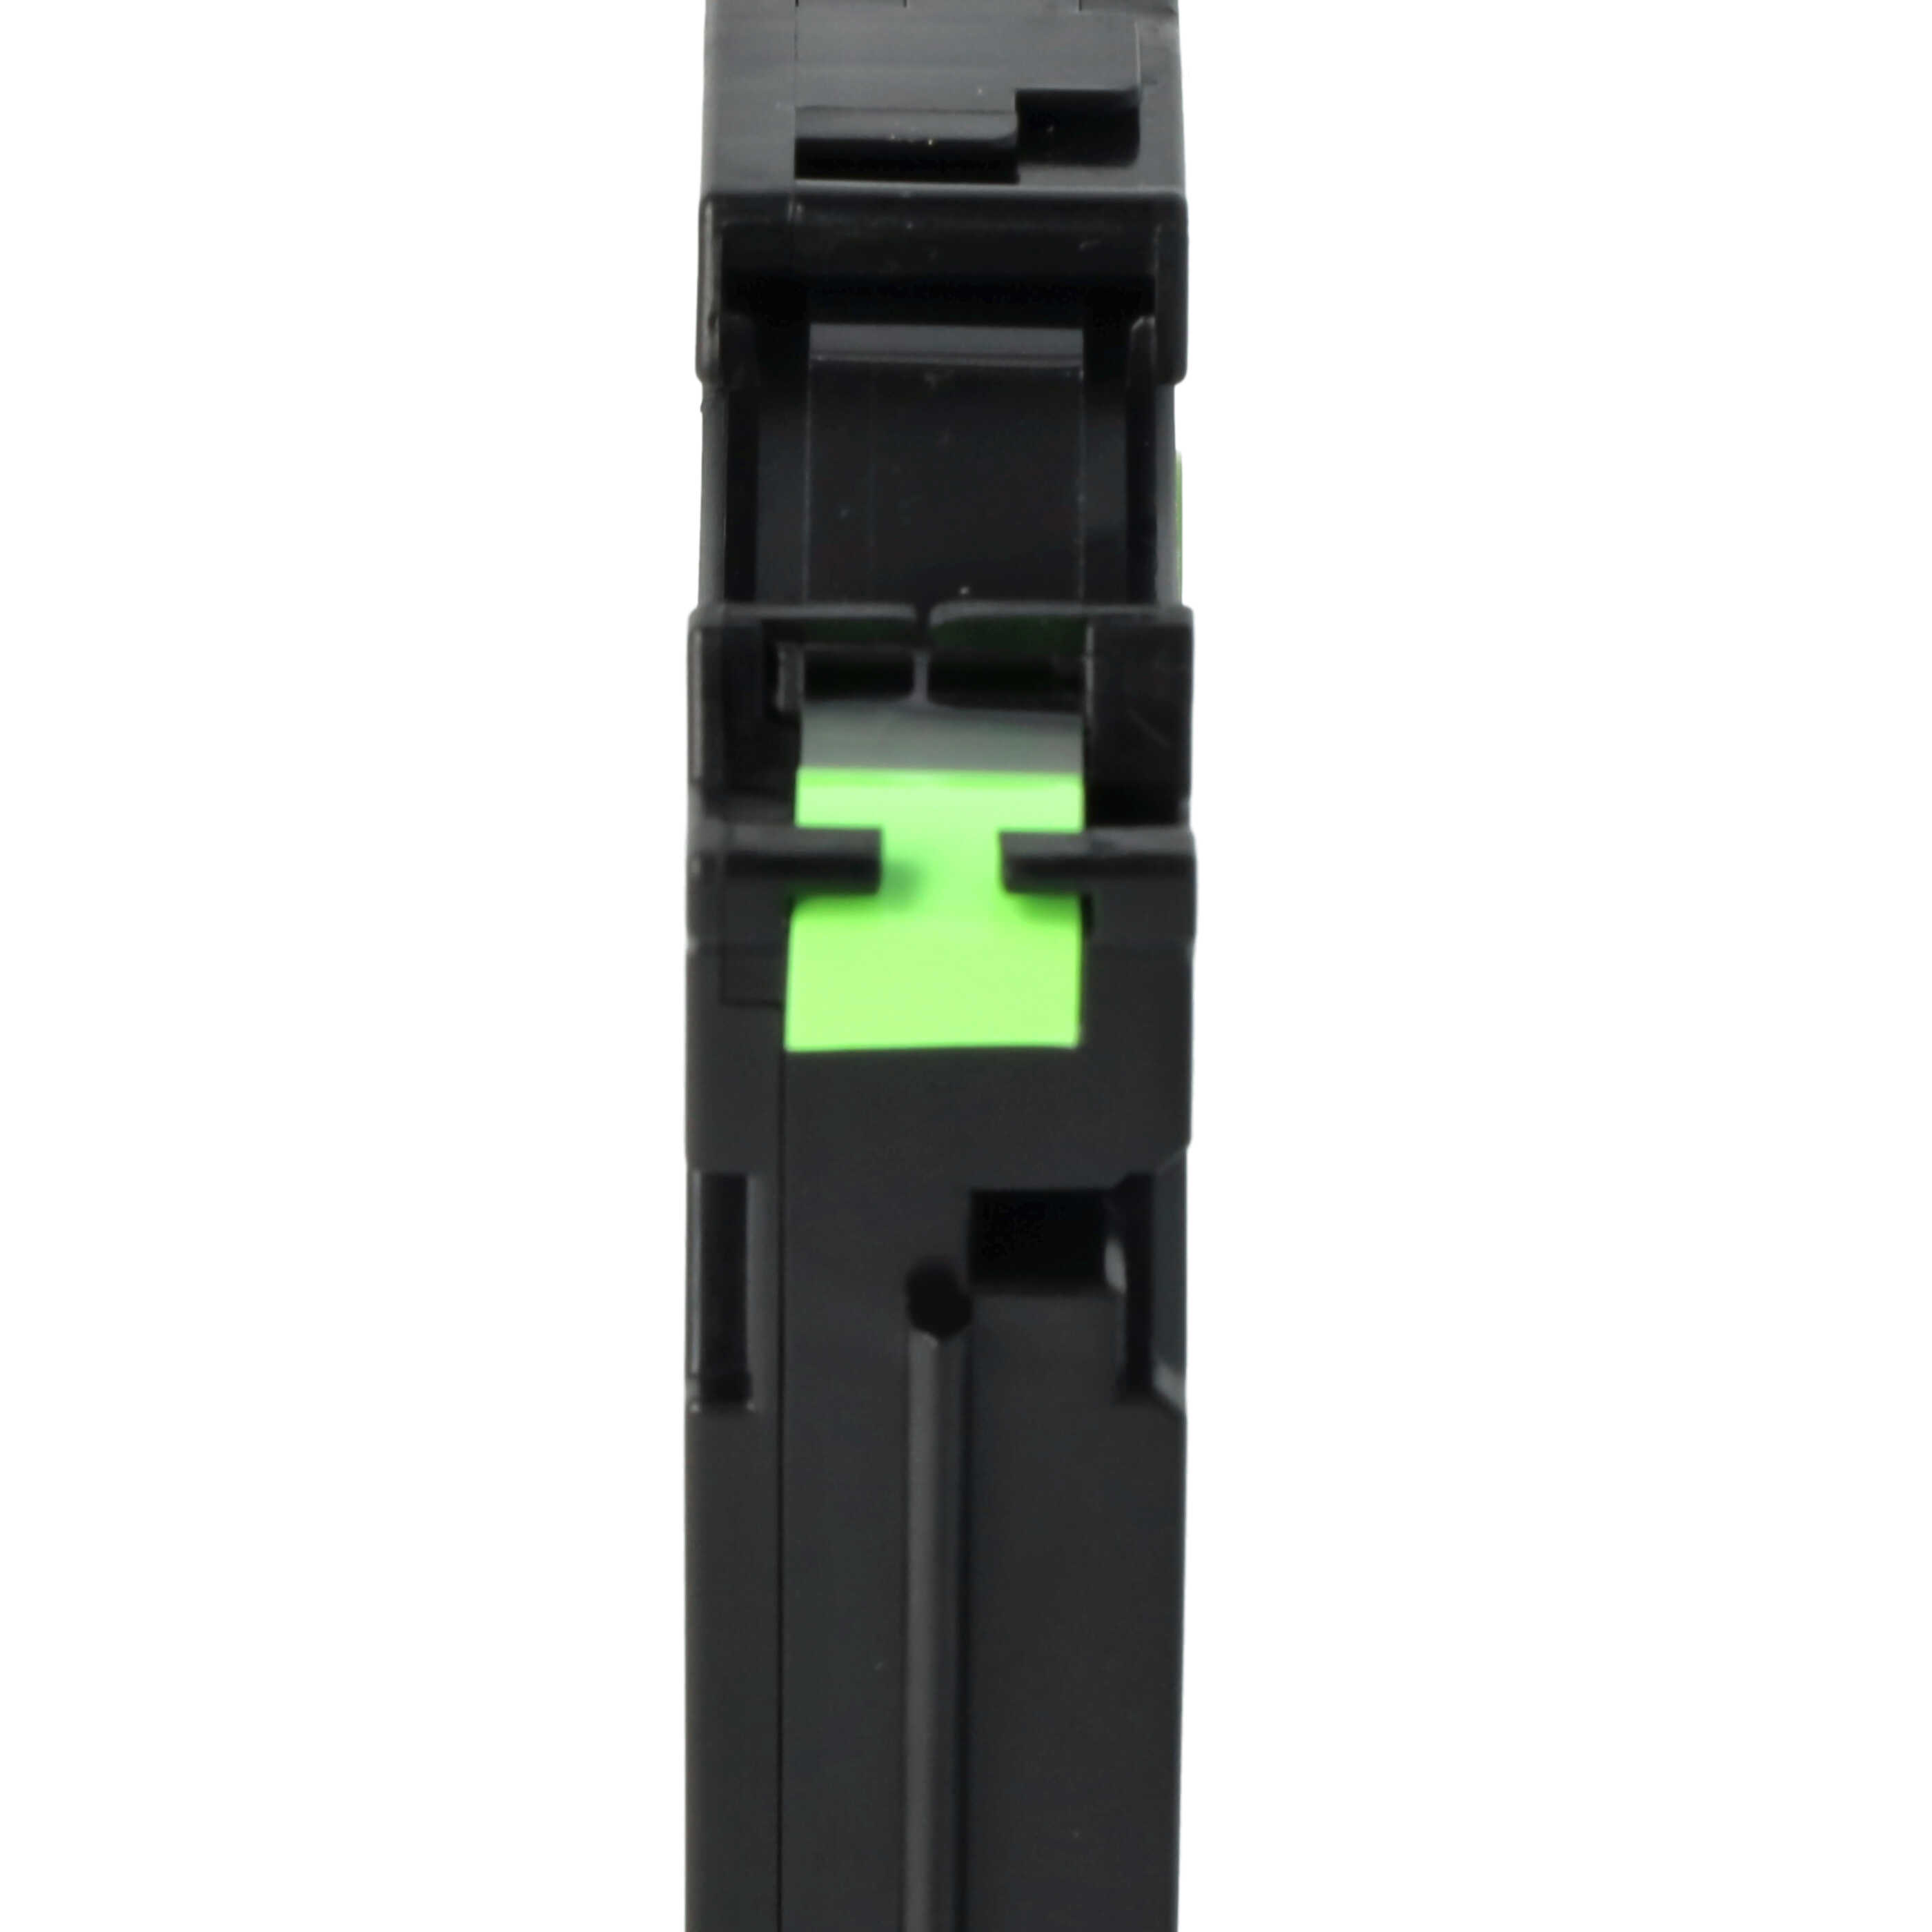 Casete cinta escritura reemplaza Brother TZ-221, TZE-221 Negro su Verde neon